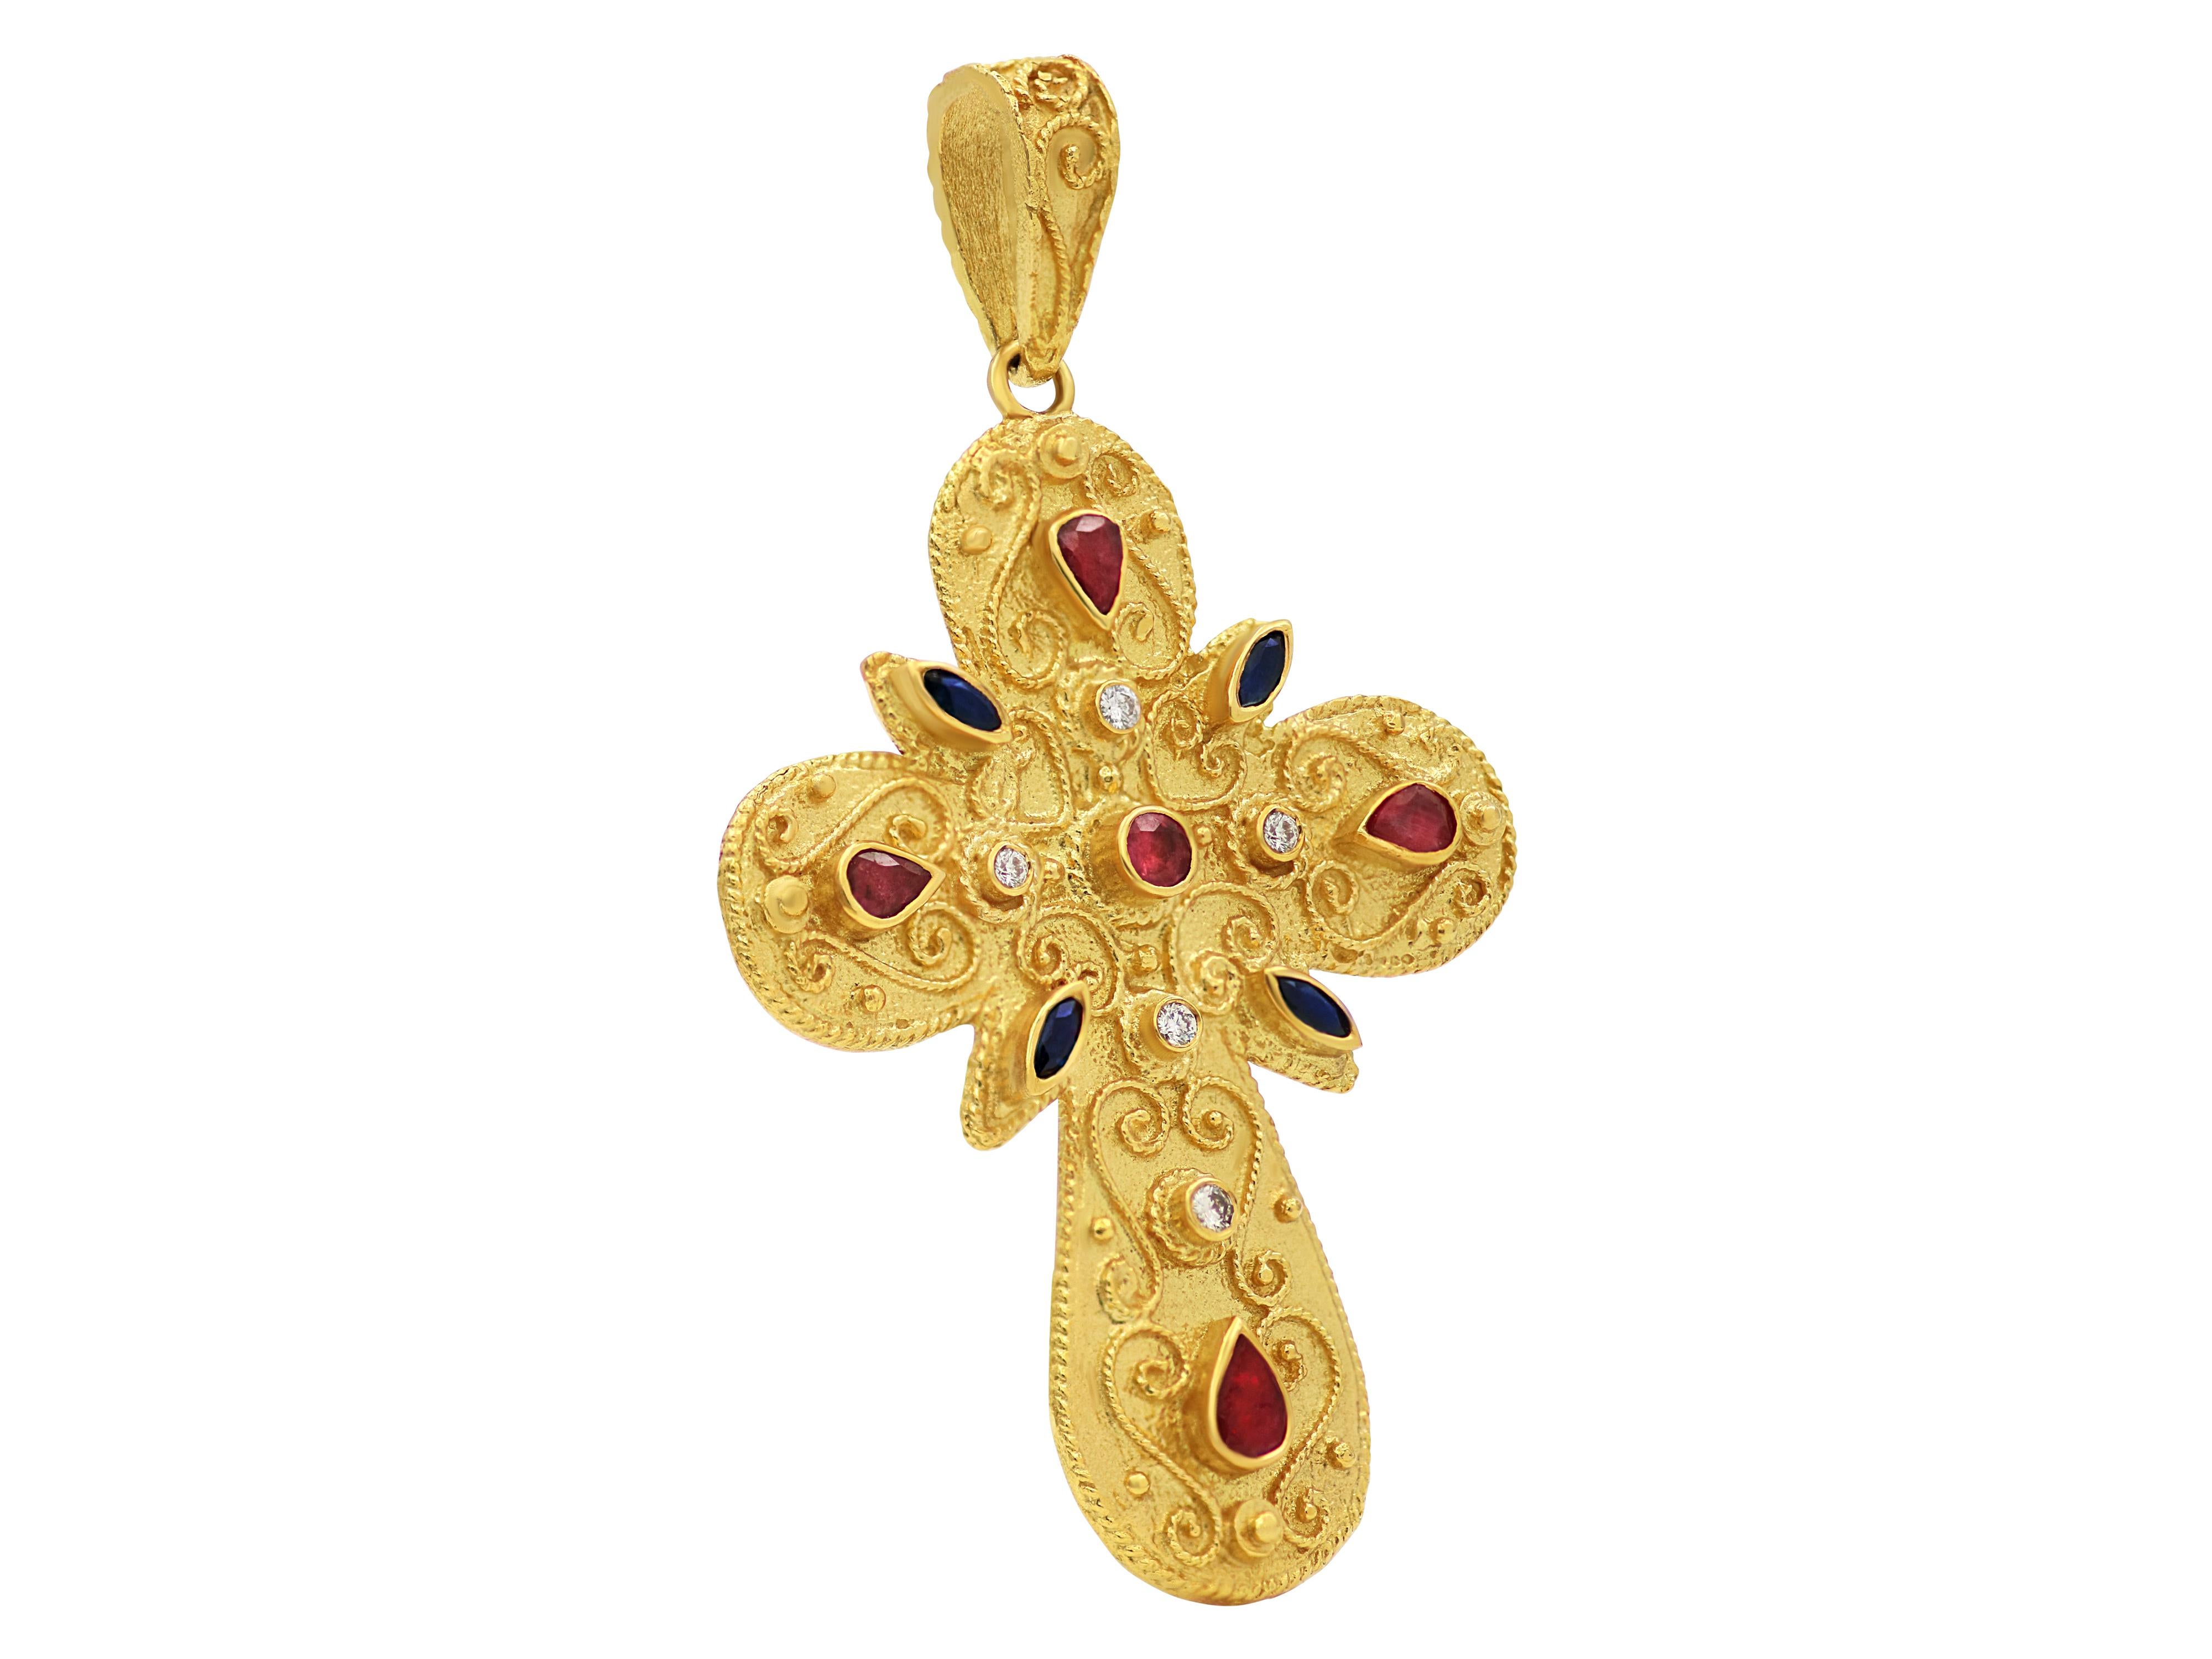 Byzantinisches Kreuz aus 18 Karat Gelbgold mit dynamischer Größe. Eine Vielzahl natürlicher Edelsteine, die das authentische mehrfarbige Aussehen der byzantinischen Ära vermitteln. Kunstwerke mit Filigranität und Granulierung vervollständigen dieses